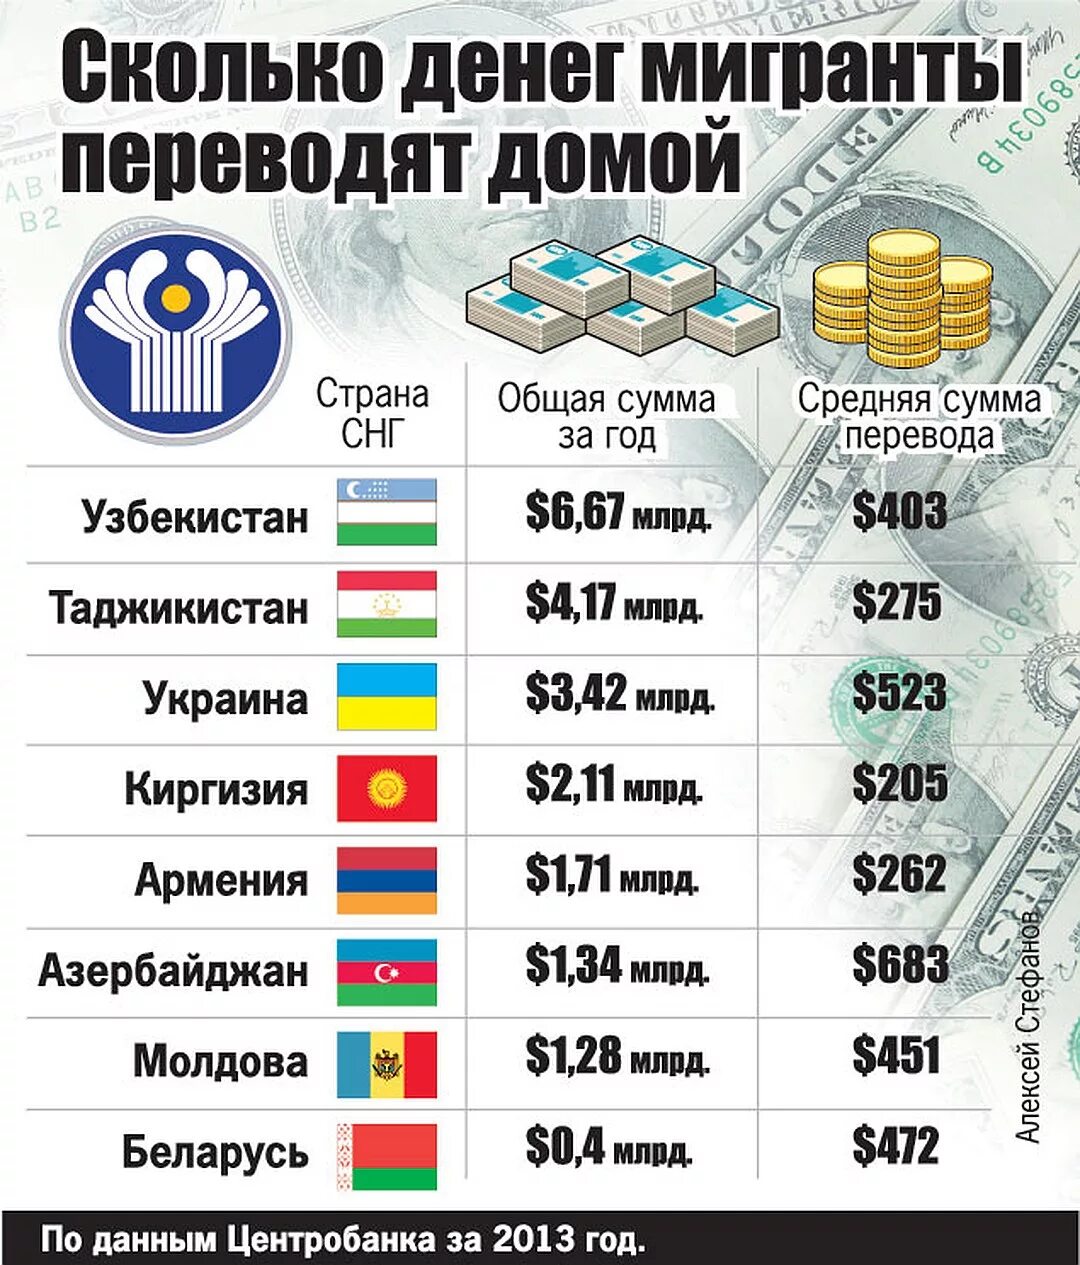 Российский узбекский сколько. Количество денег в странах. Сколько денег в России. Сколько денег по странам. Сколько в Росси денеиг.